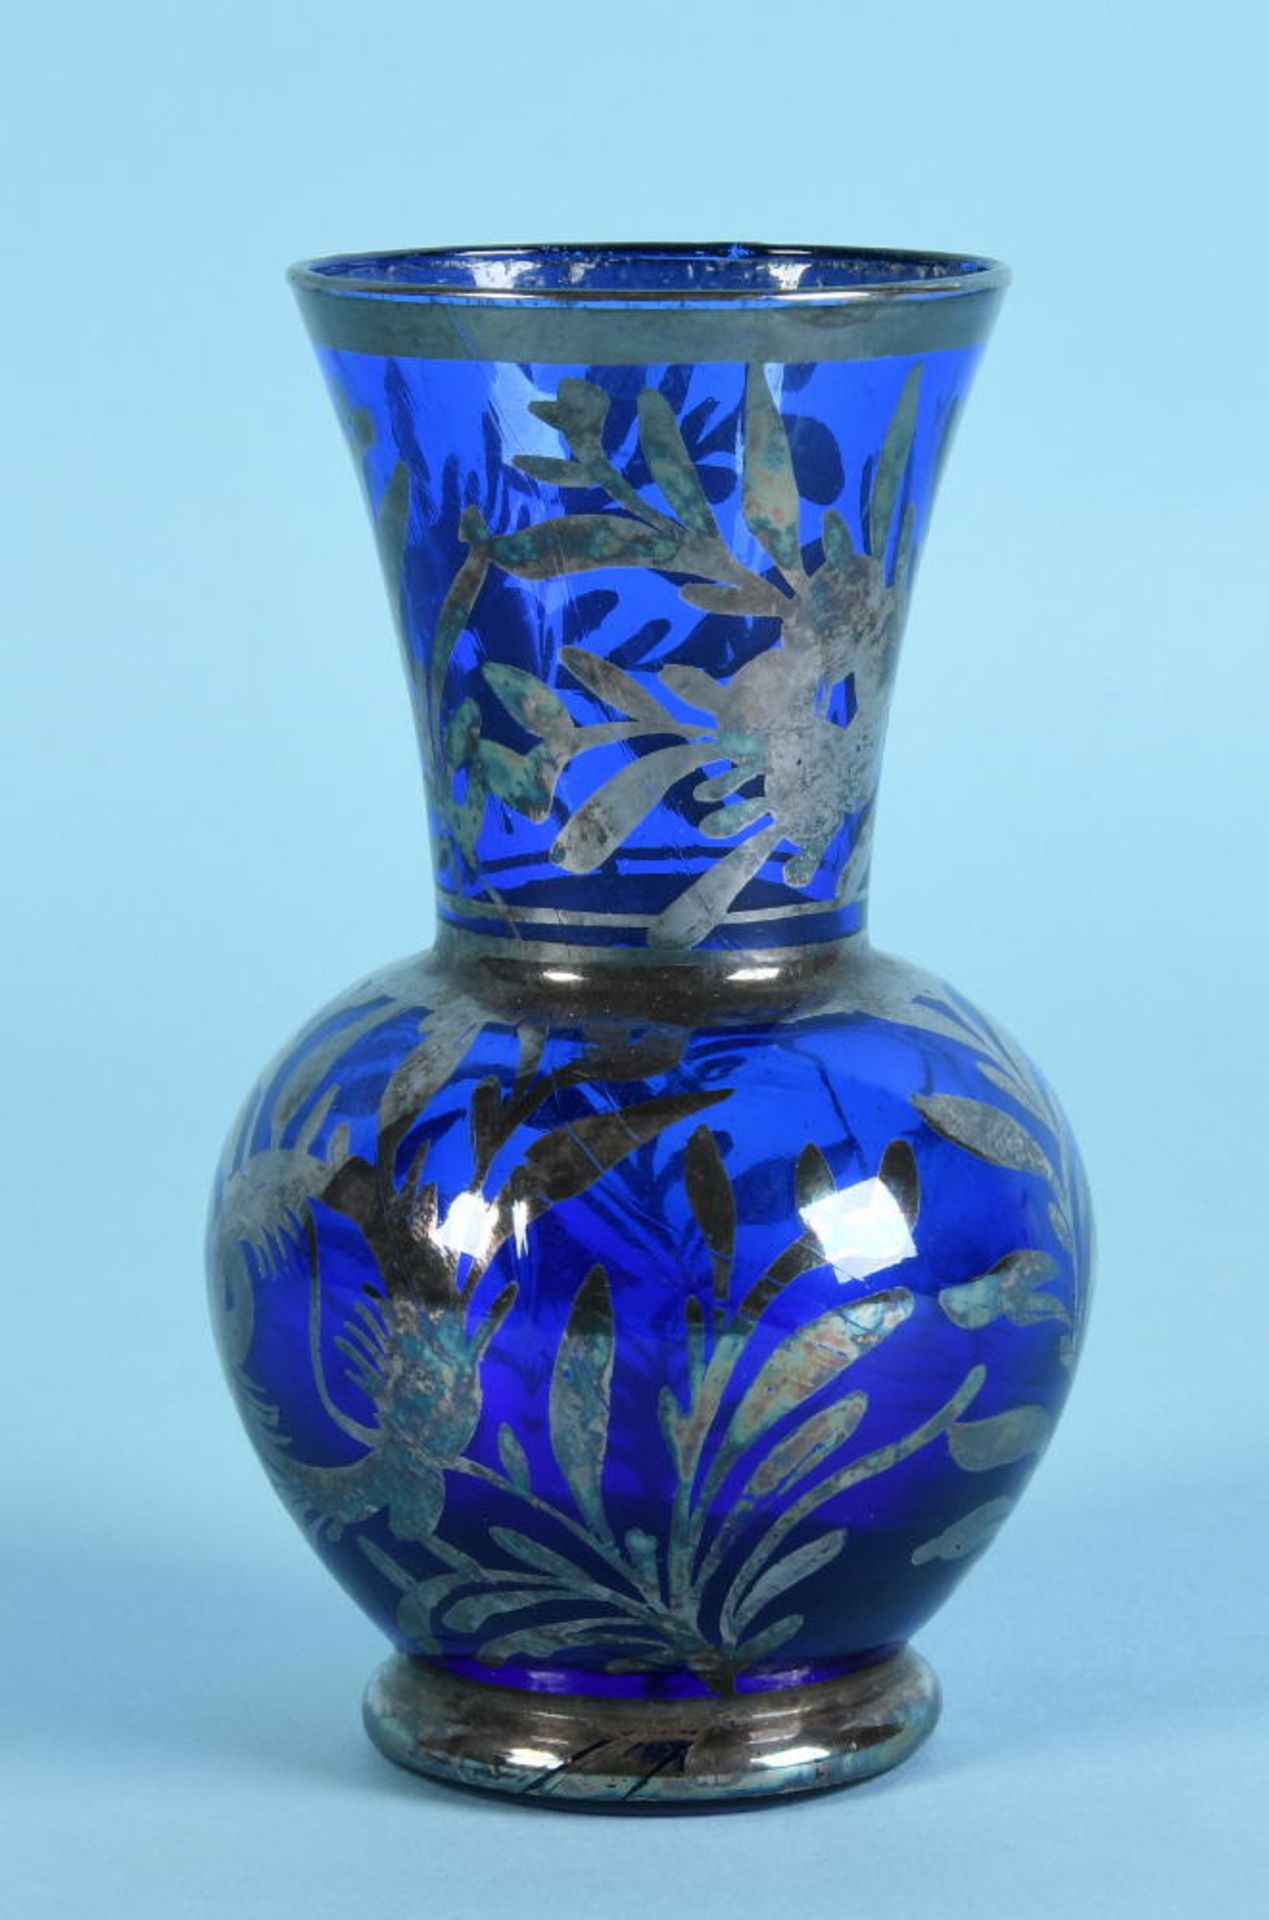 Vaseblaues Glas, Silberauflage mit Blumendekor, Balusterform, H= 12 cmVaseblaues Glas, Silberauflage